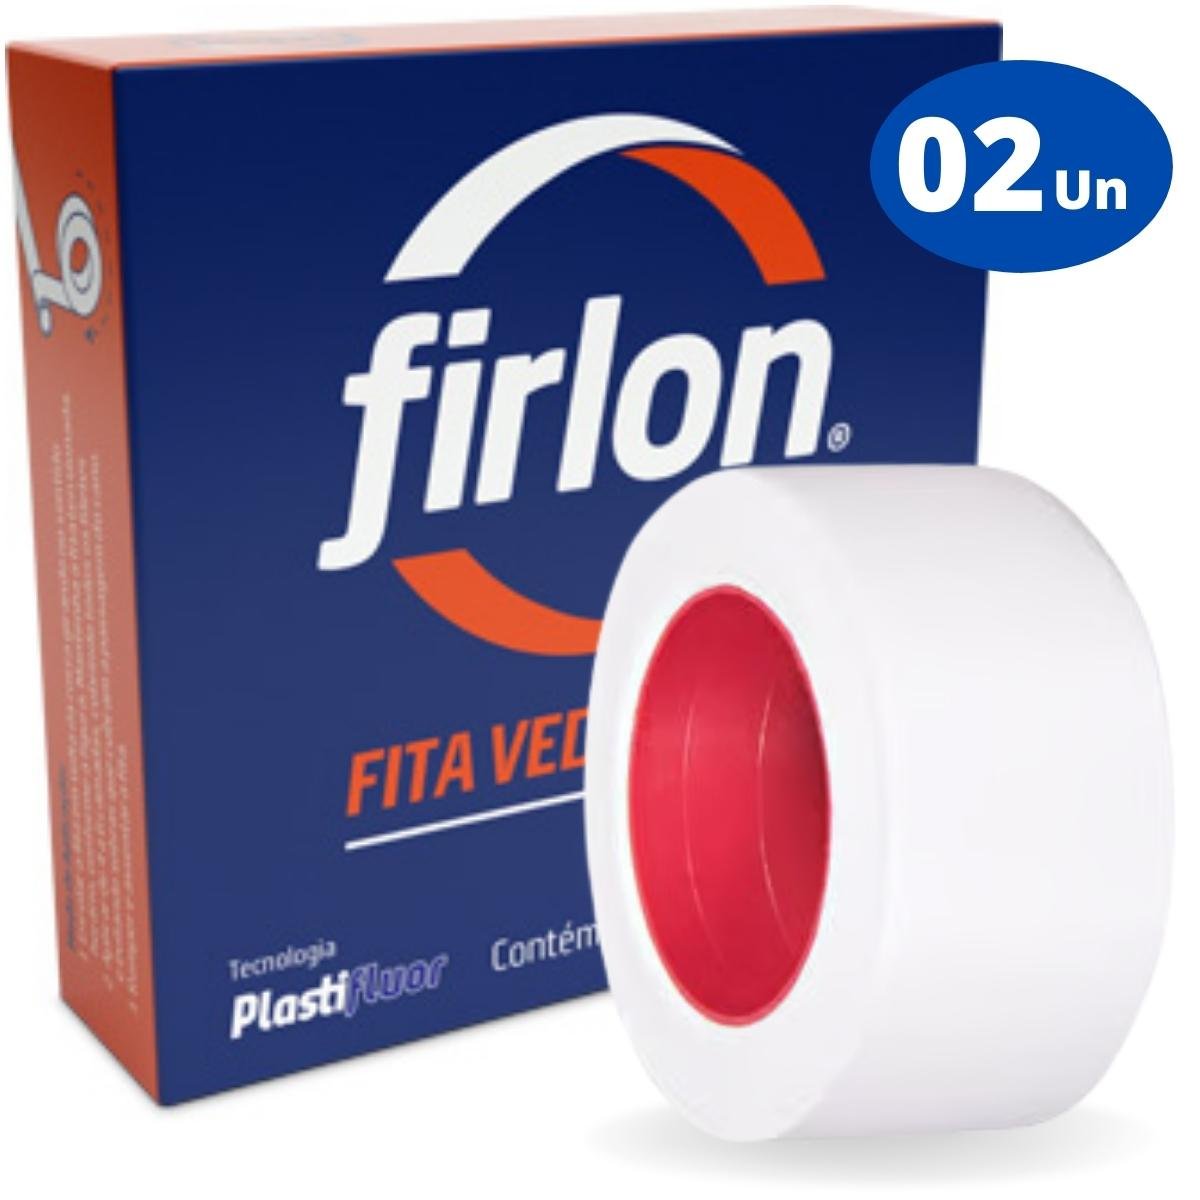 Fita Veda Rosca Teflon 18mm x 10m | Firlon | Kit 02 Un - 1